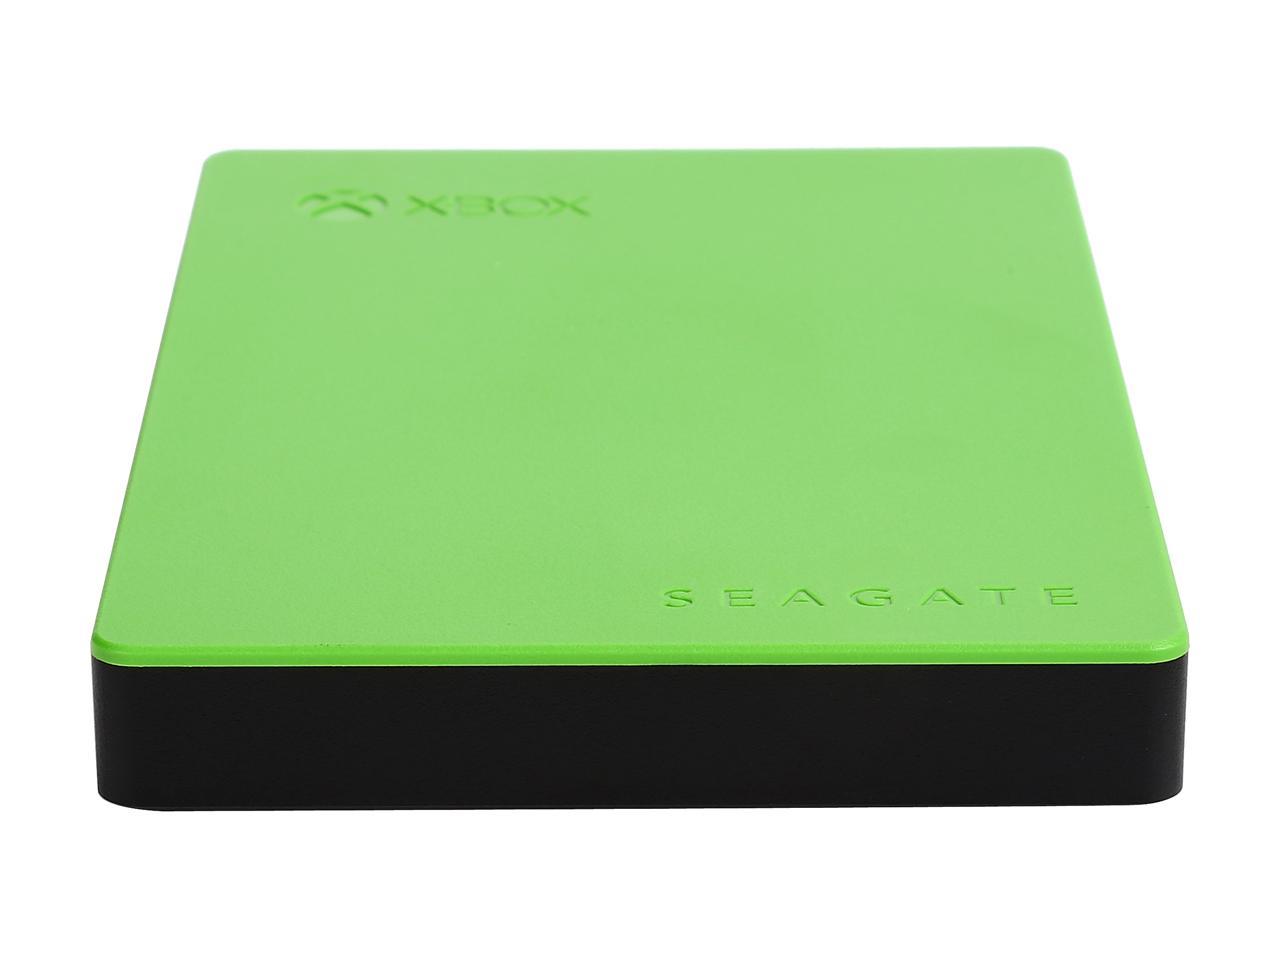 Seagate 2Tb Game Drive For Xbox Portable Drive Usb 3.0 Model Stea2000403 Green